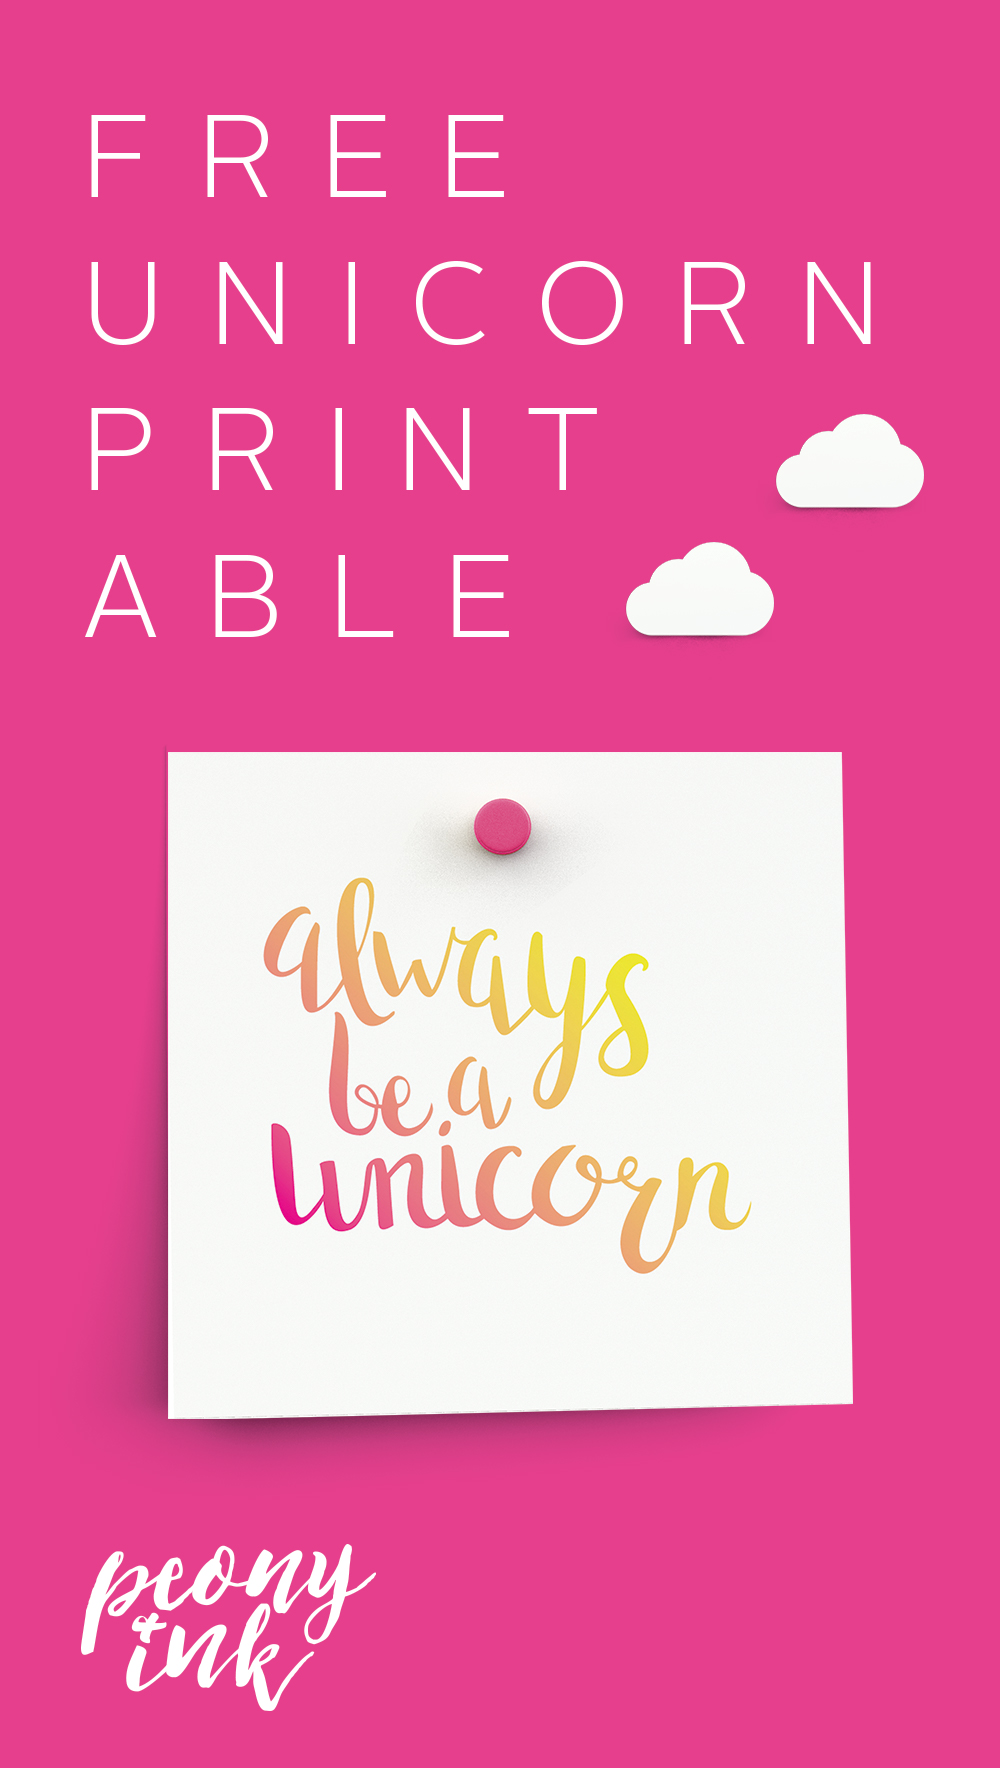 Free unicorn quote printable!